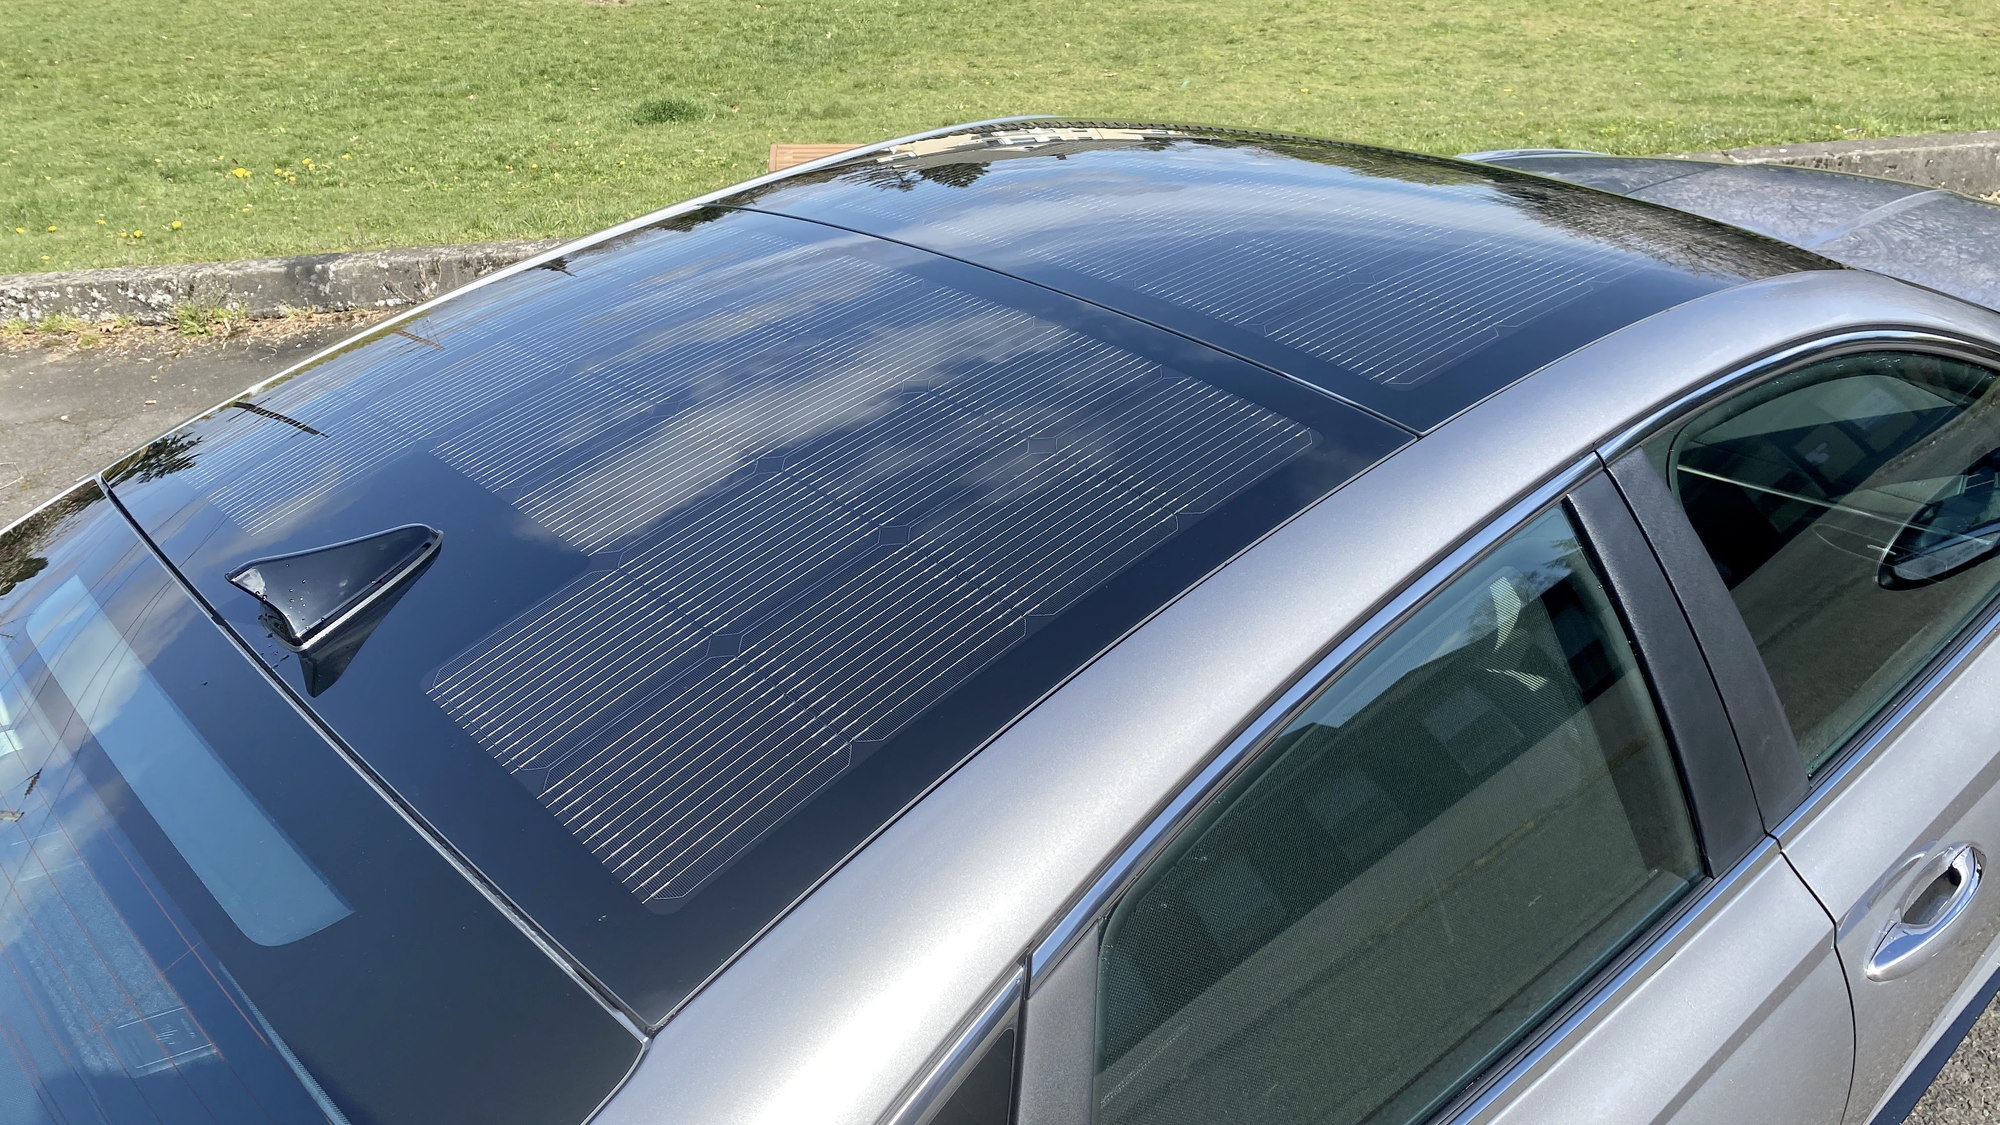 Solar Roof System in 2020 Hyundai Sonata Hybrid  -  Portland OR, April 2020